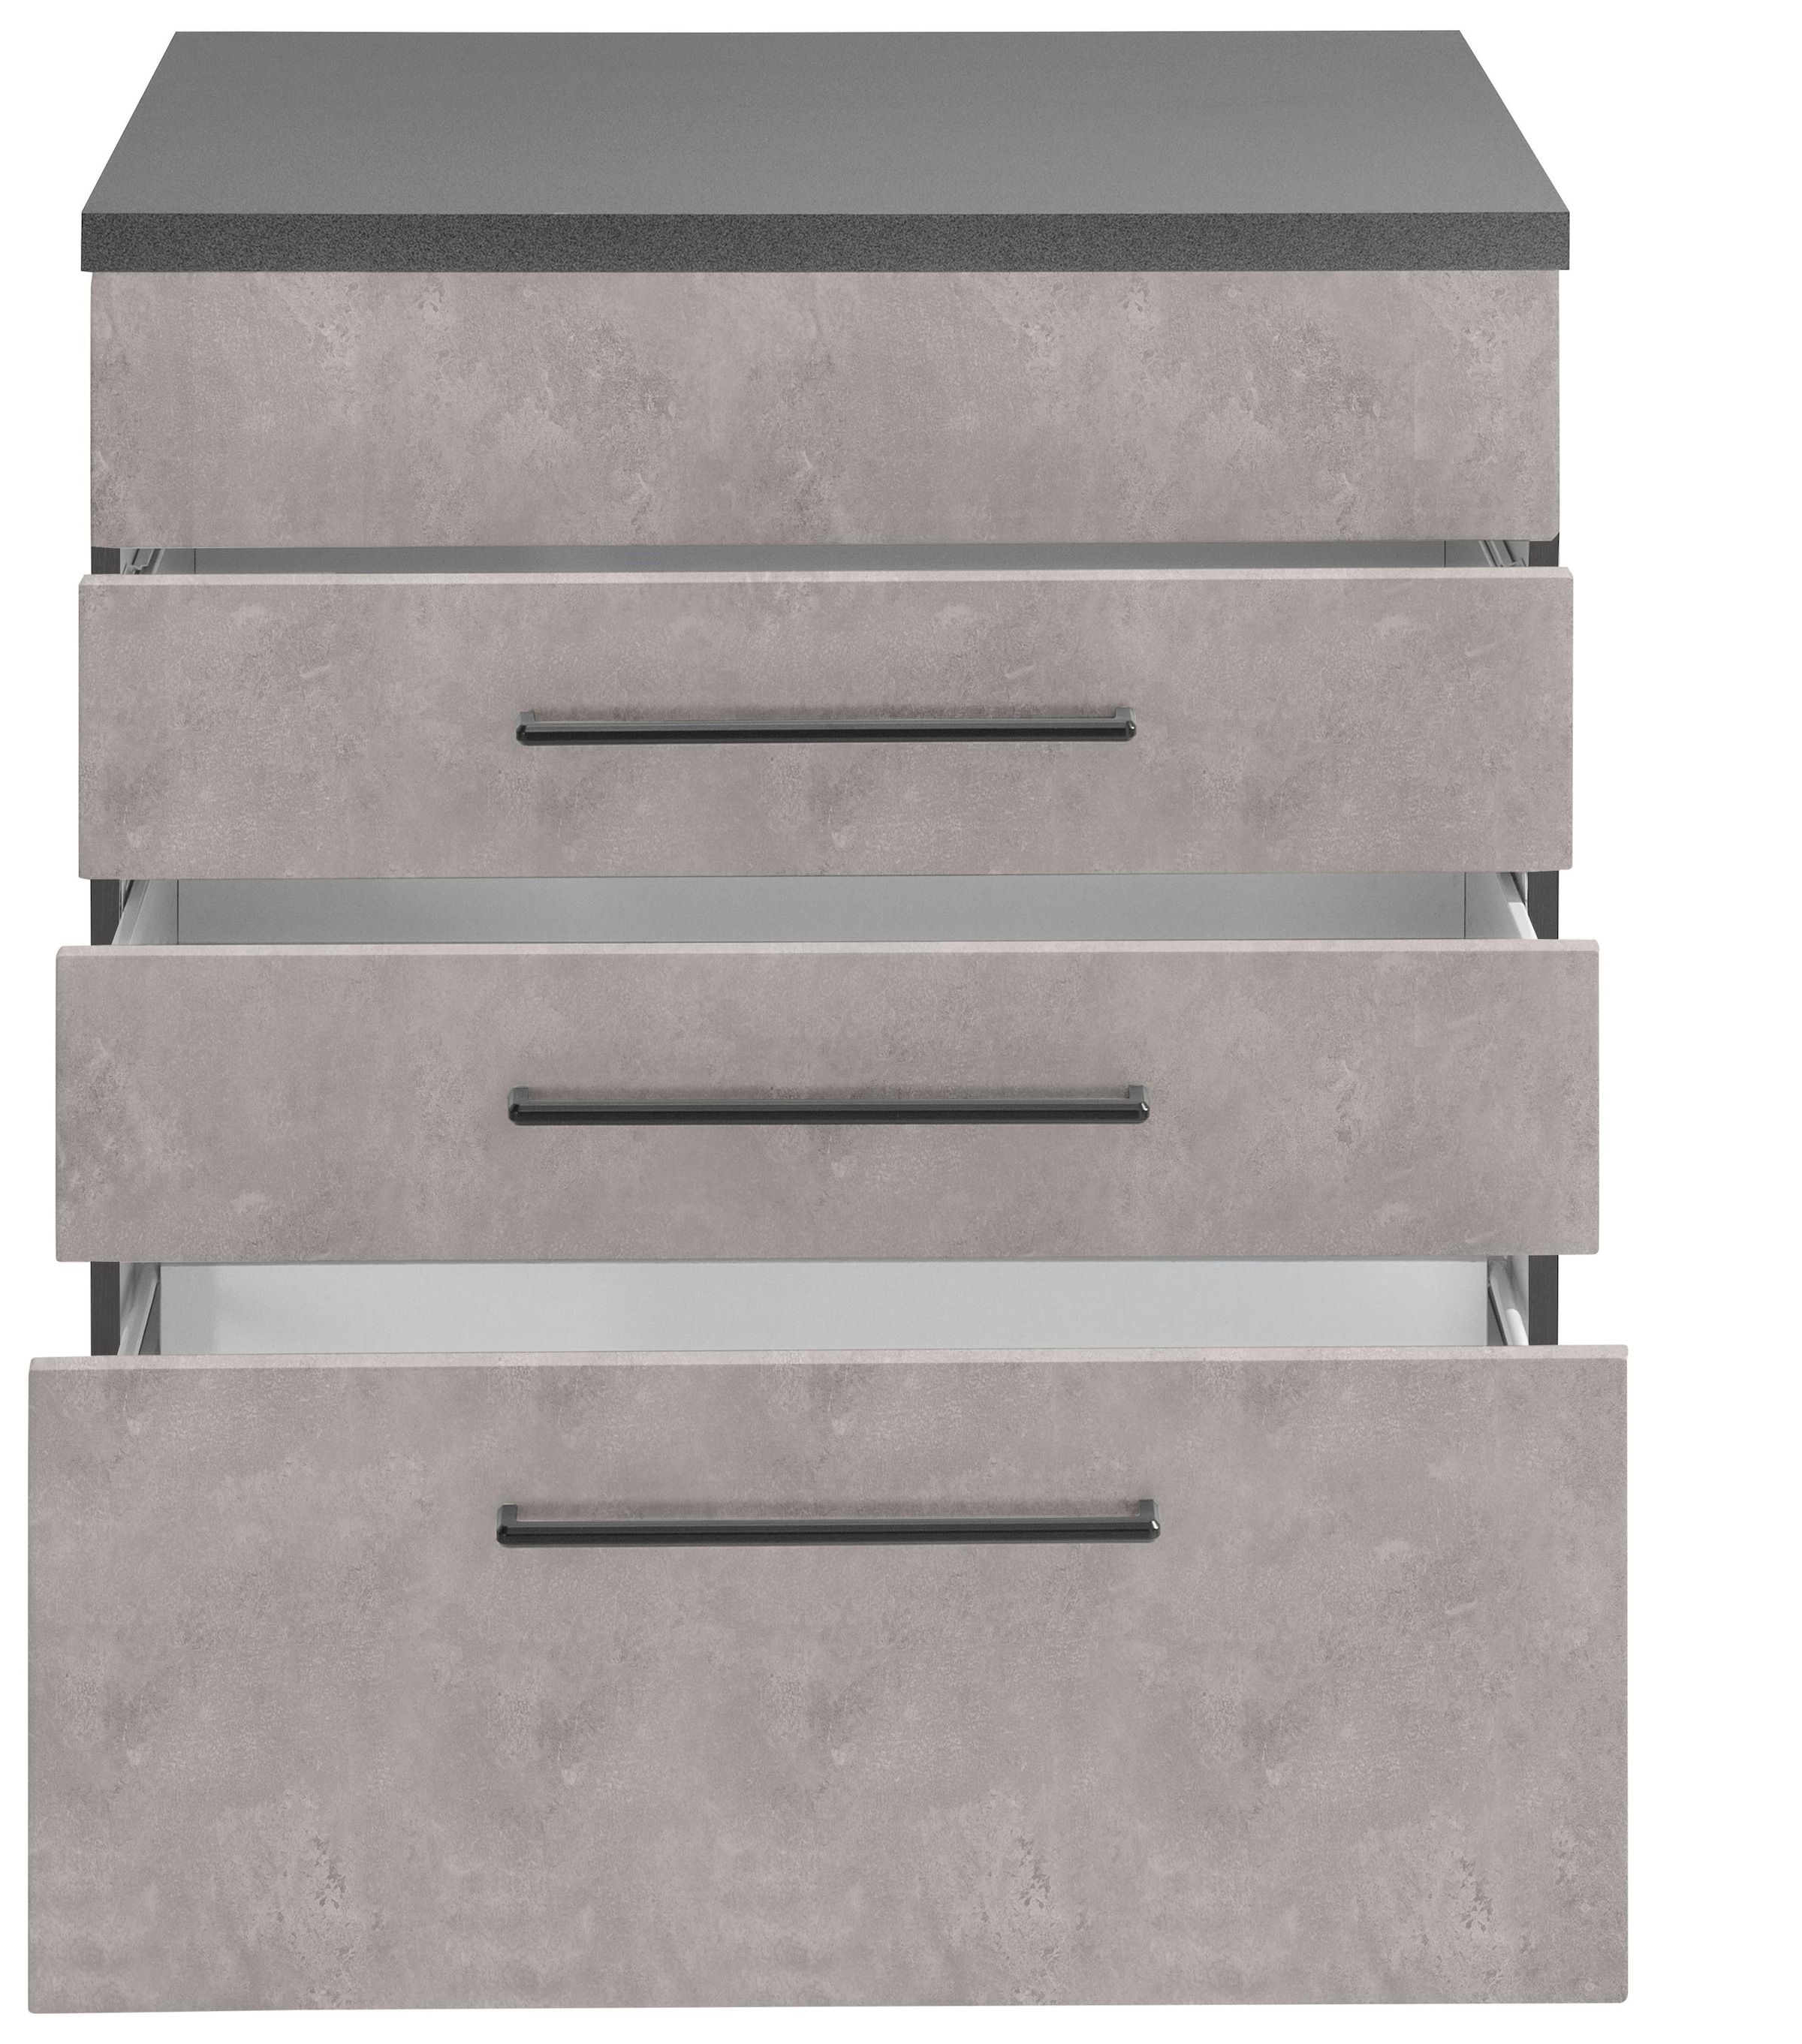 HELD MÖBEL Kochfeldumbauschrank »Tulsa«, 60 cm breit, 2 Schubladen, 1 großer Auszug, schwarzer Metallgriff